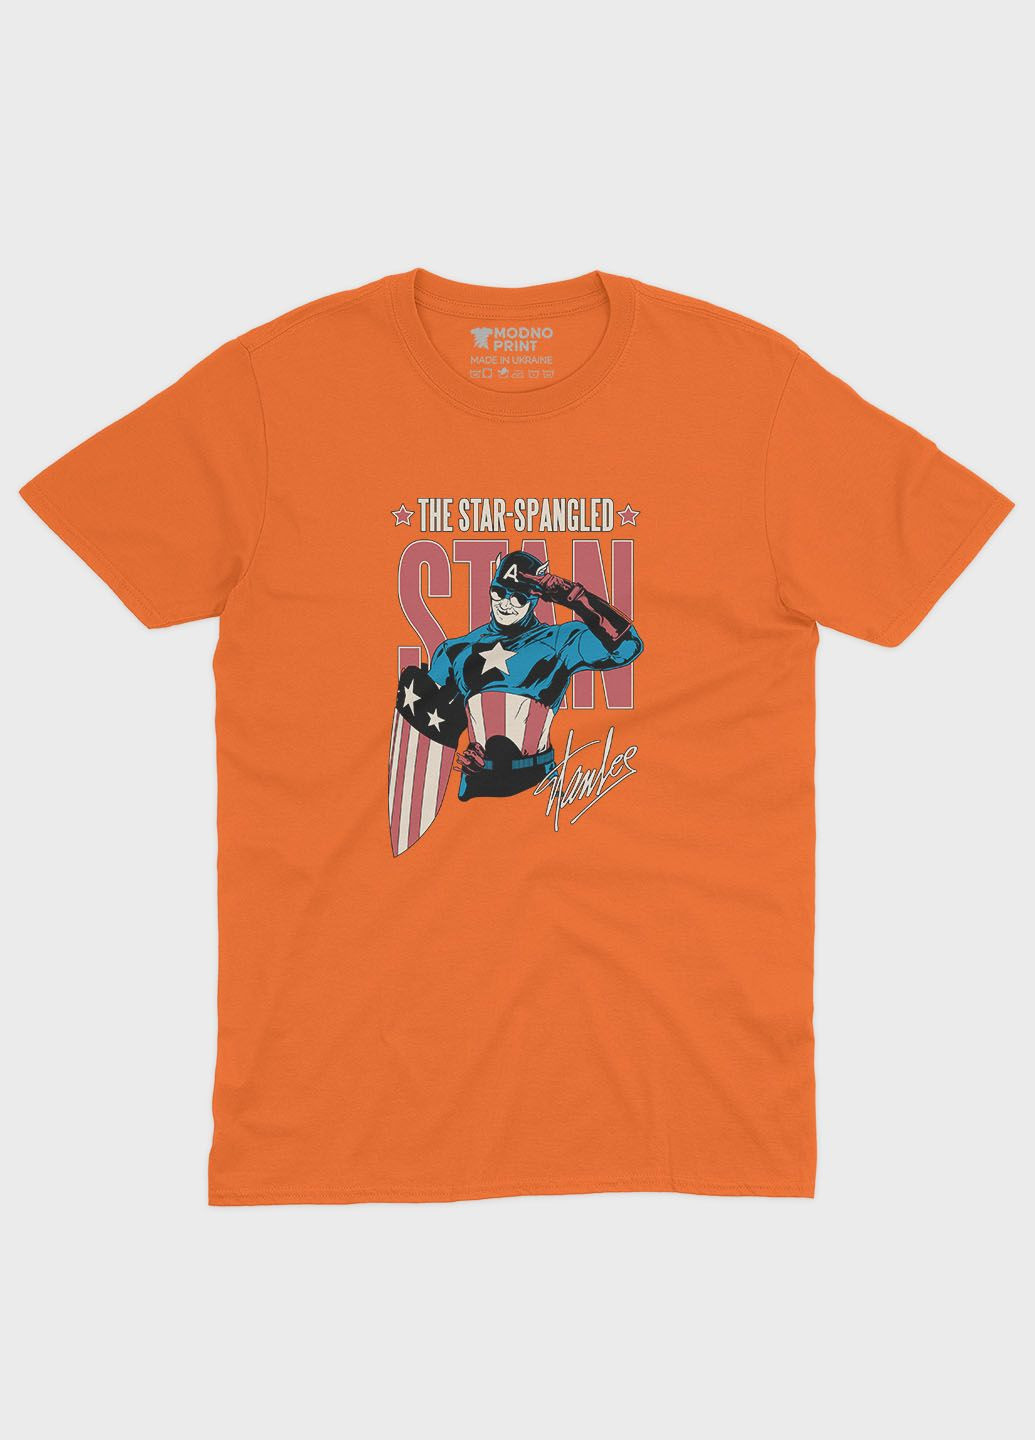 Оранжевая демисезонная футболка для мальчика с принтом супергероя - капитан америка (ts001-1-ora-006-022-002-b) Modno